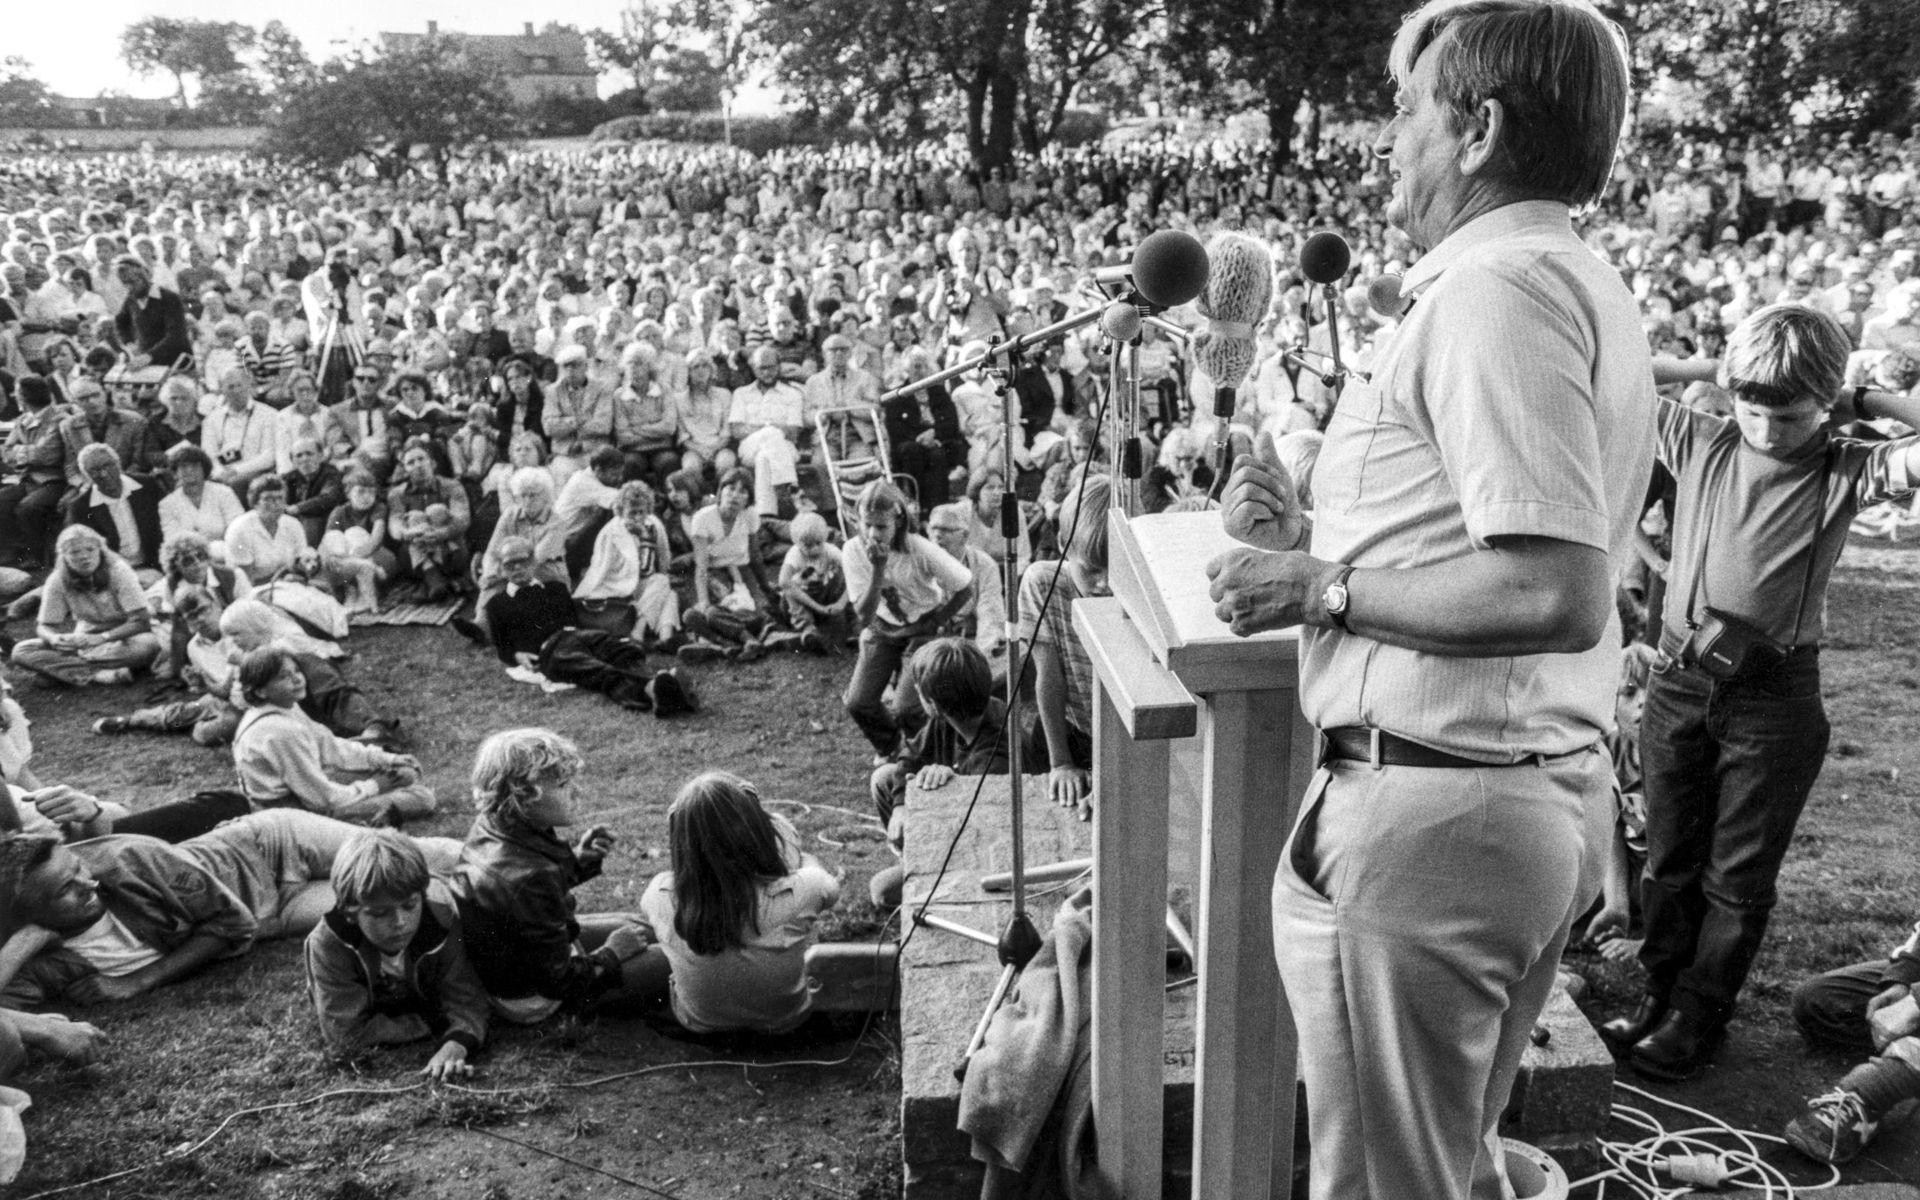 Socialdemokraternas partiledare Olof Palme vid talarstolen under sitt traditionsenliga sommartal i Almedalen, Visby, Gotland, 31:a juli 1981.